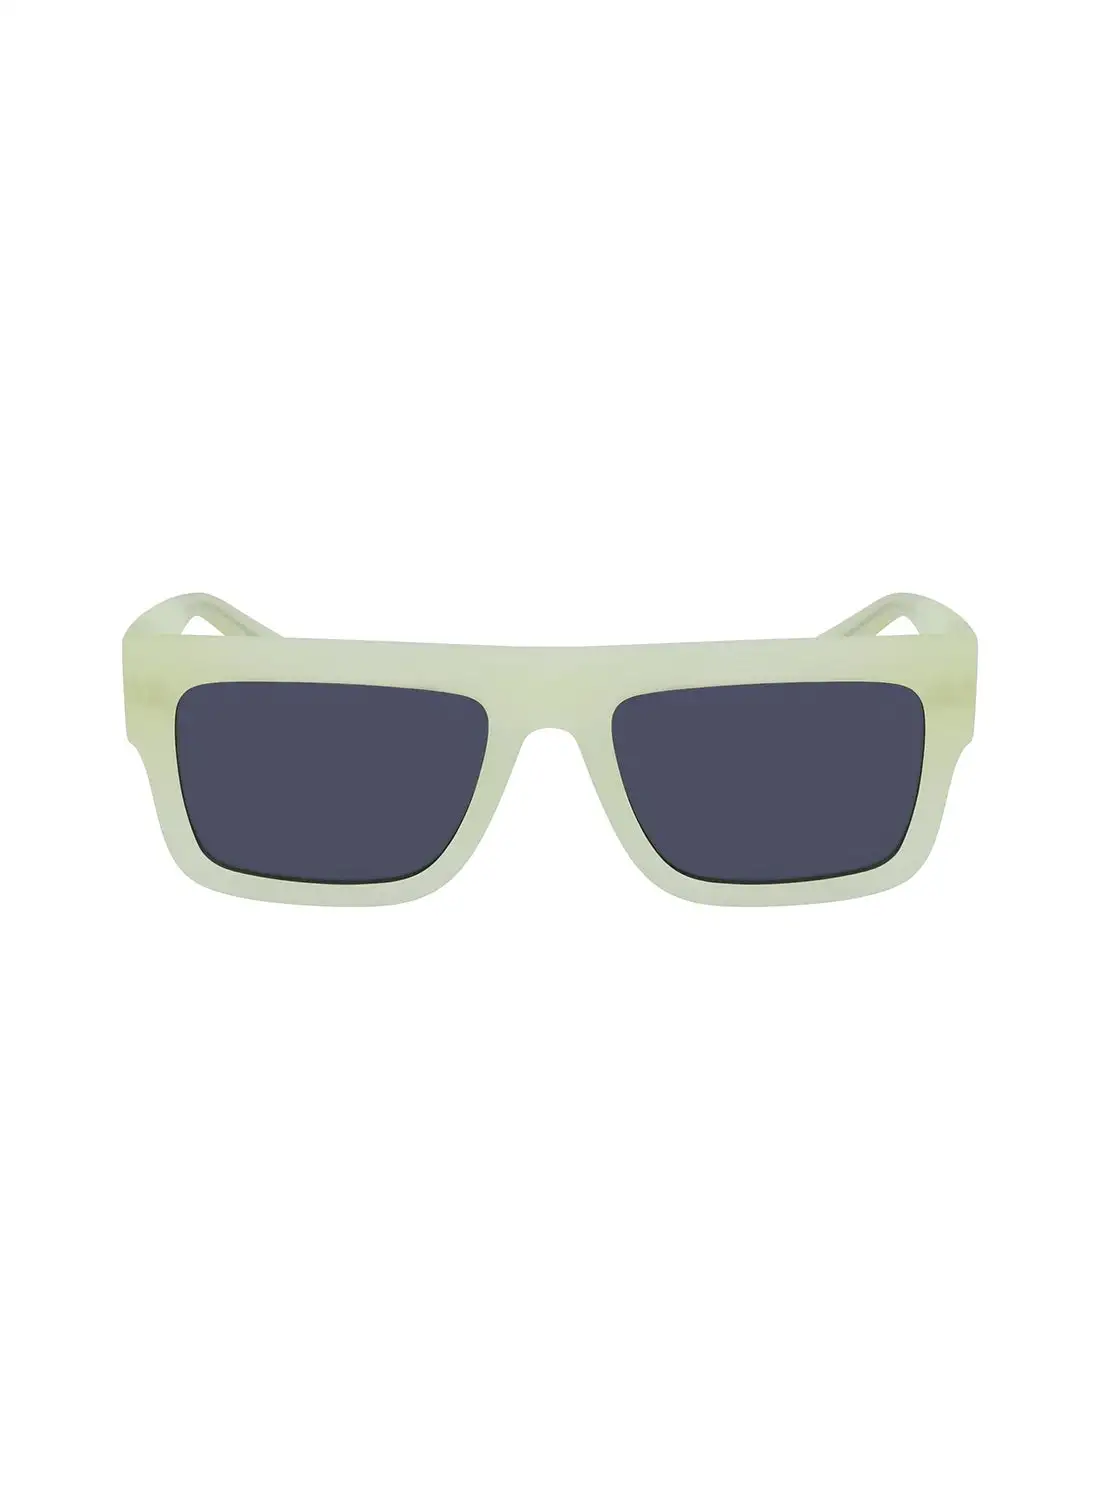 Calvin Klein Jeans Unisex Rectangular Sunglasses - CKJ23642S-745-5419 - Lens Size: 54 Mm